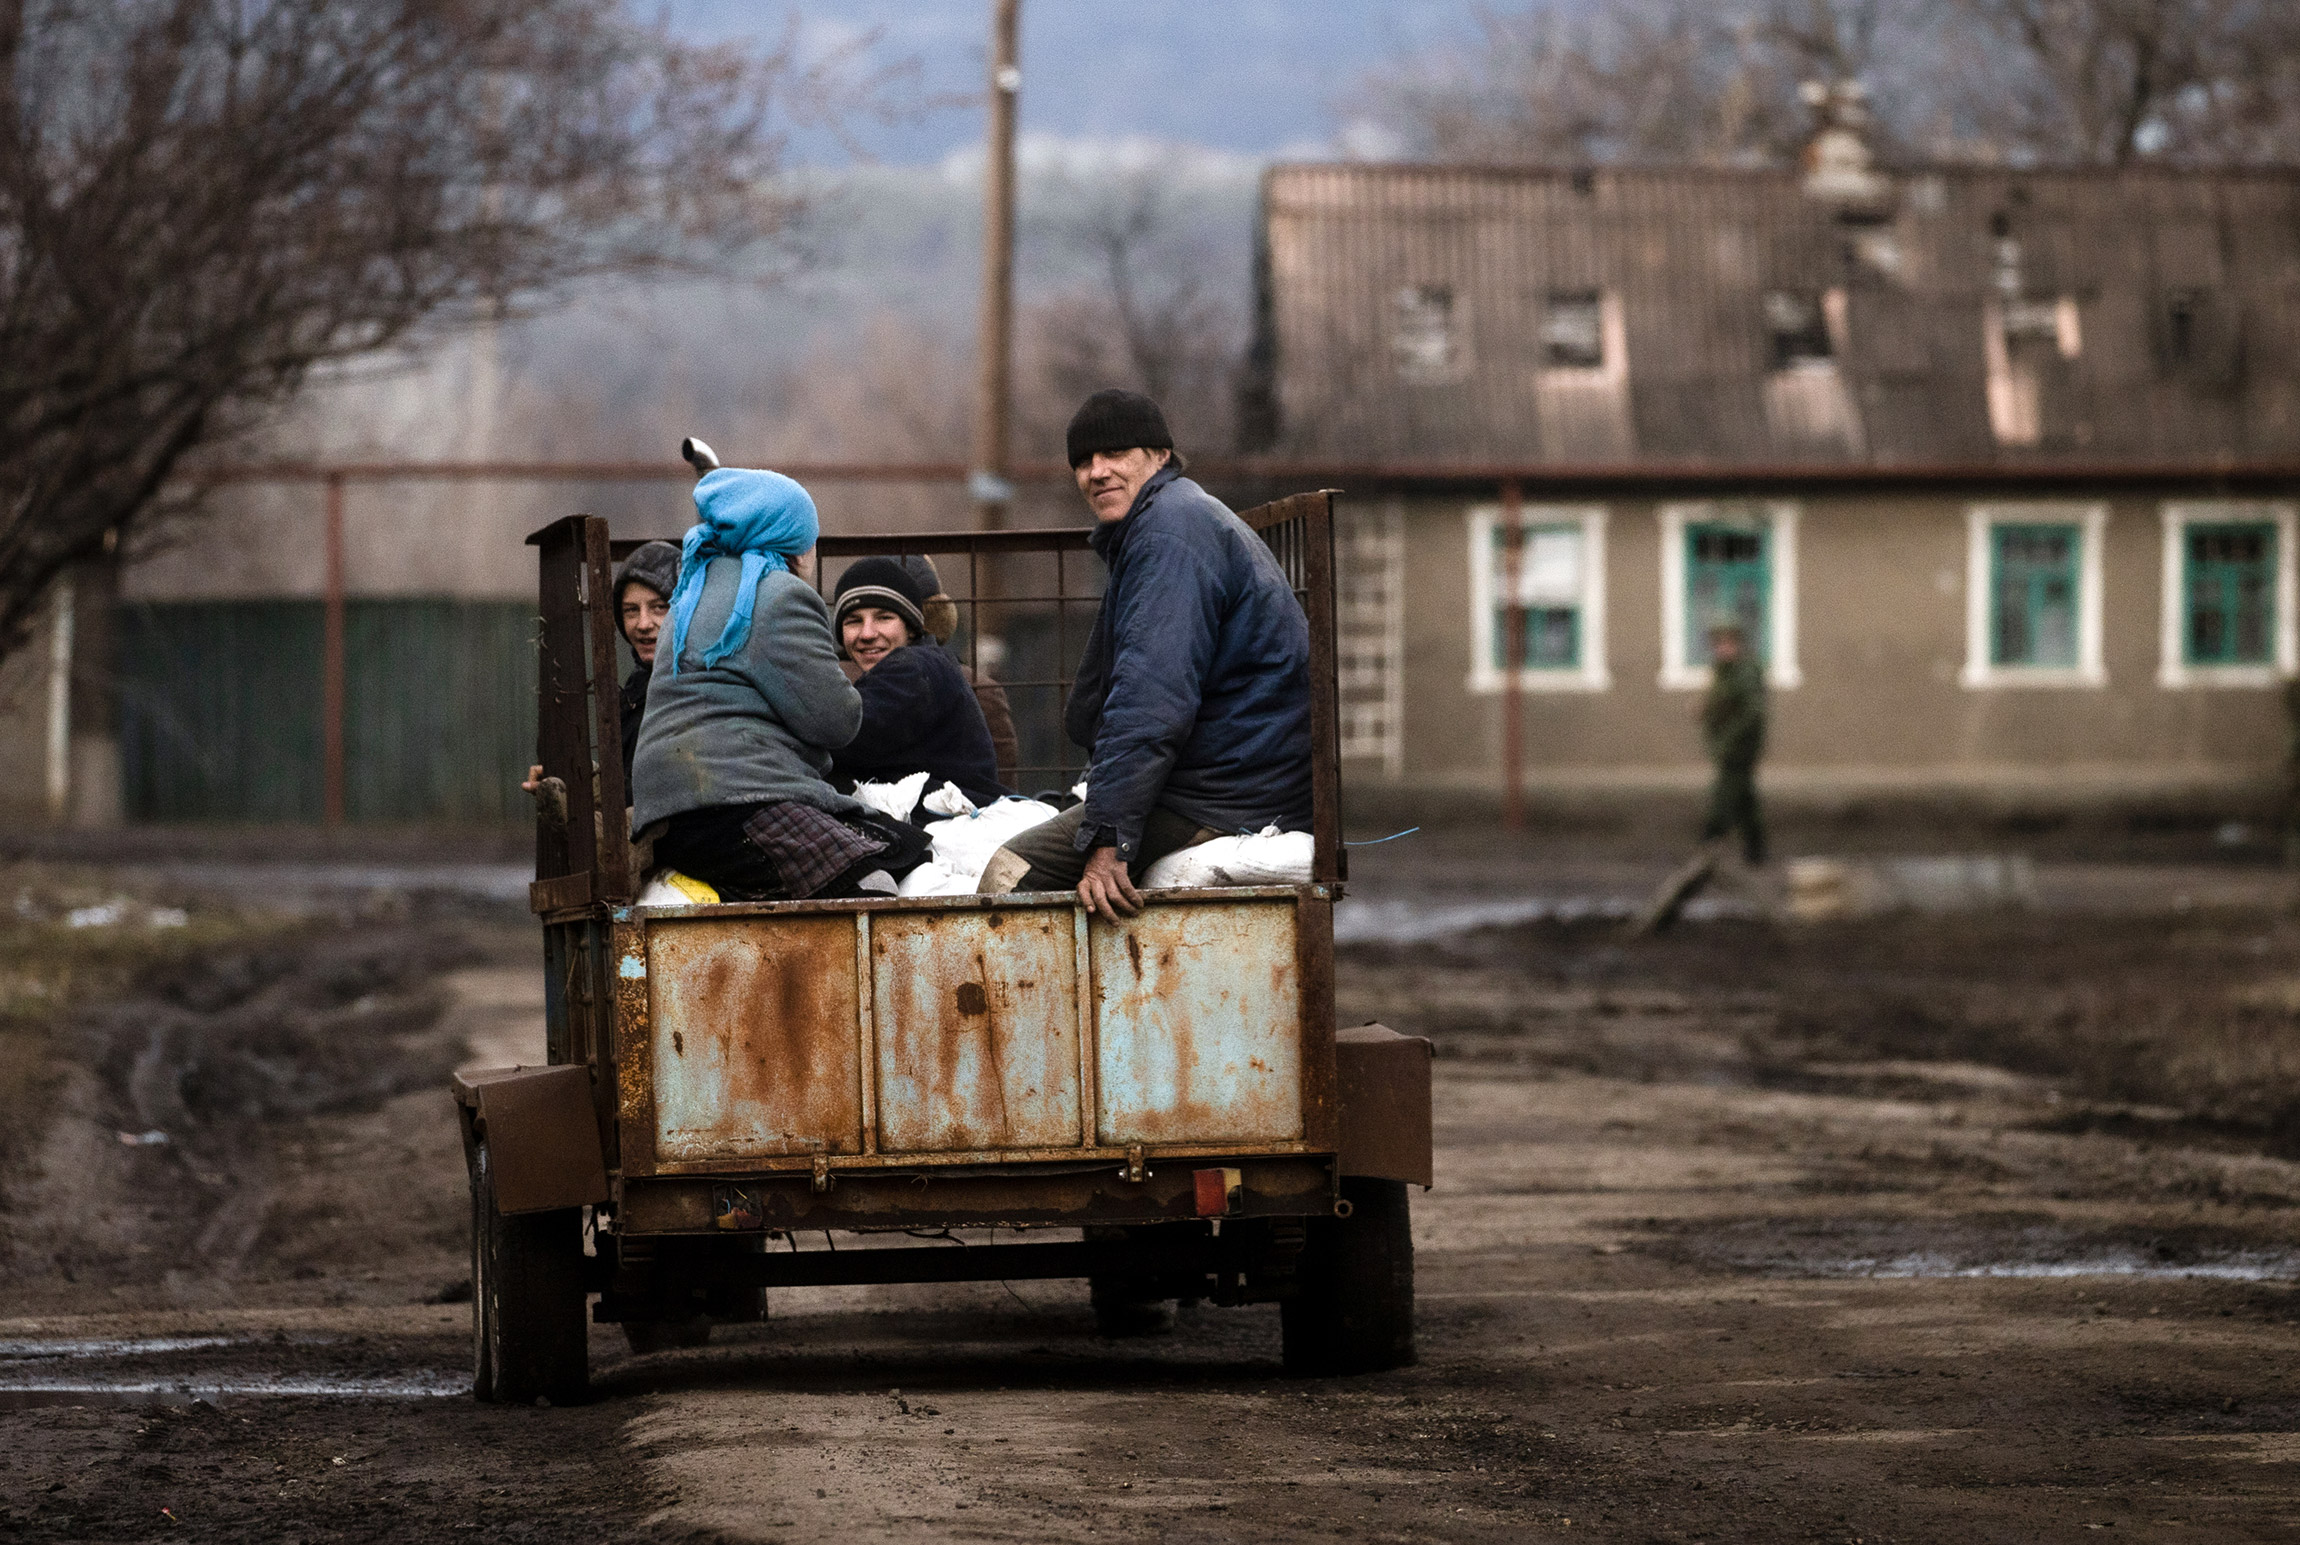 Луганская область, село Крымское, перешедшее под контроль ЛНР. Местные жители везут домой кормовое зерно